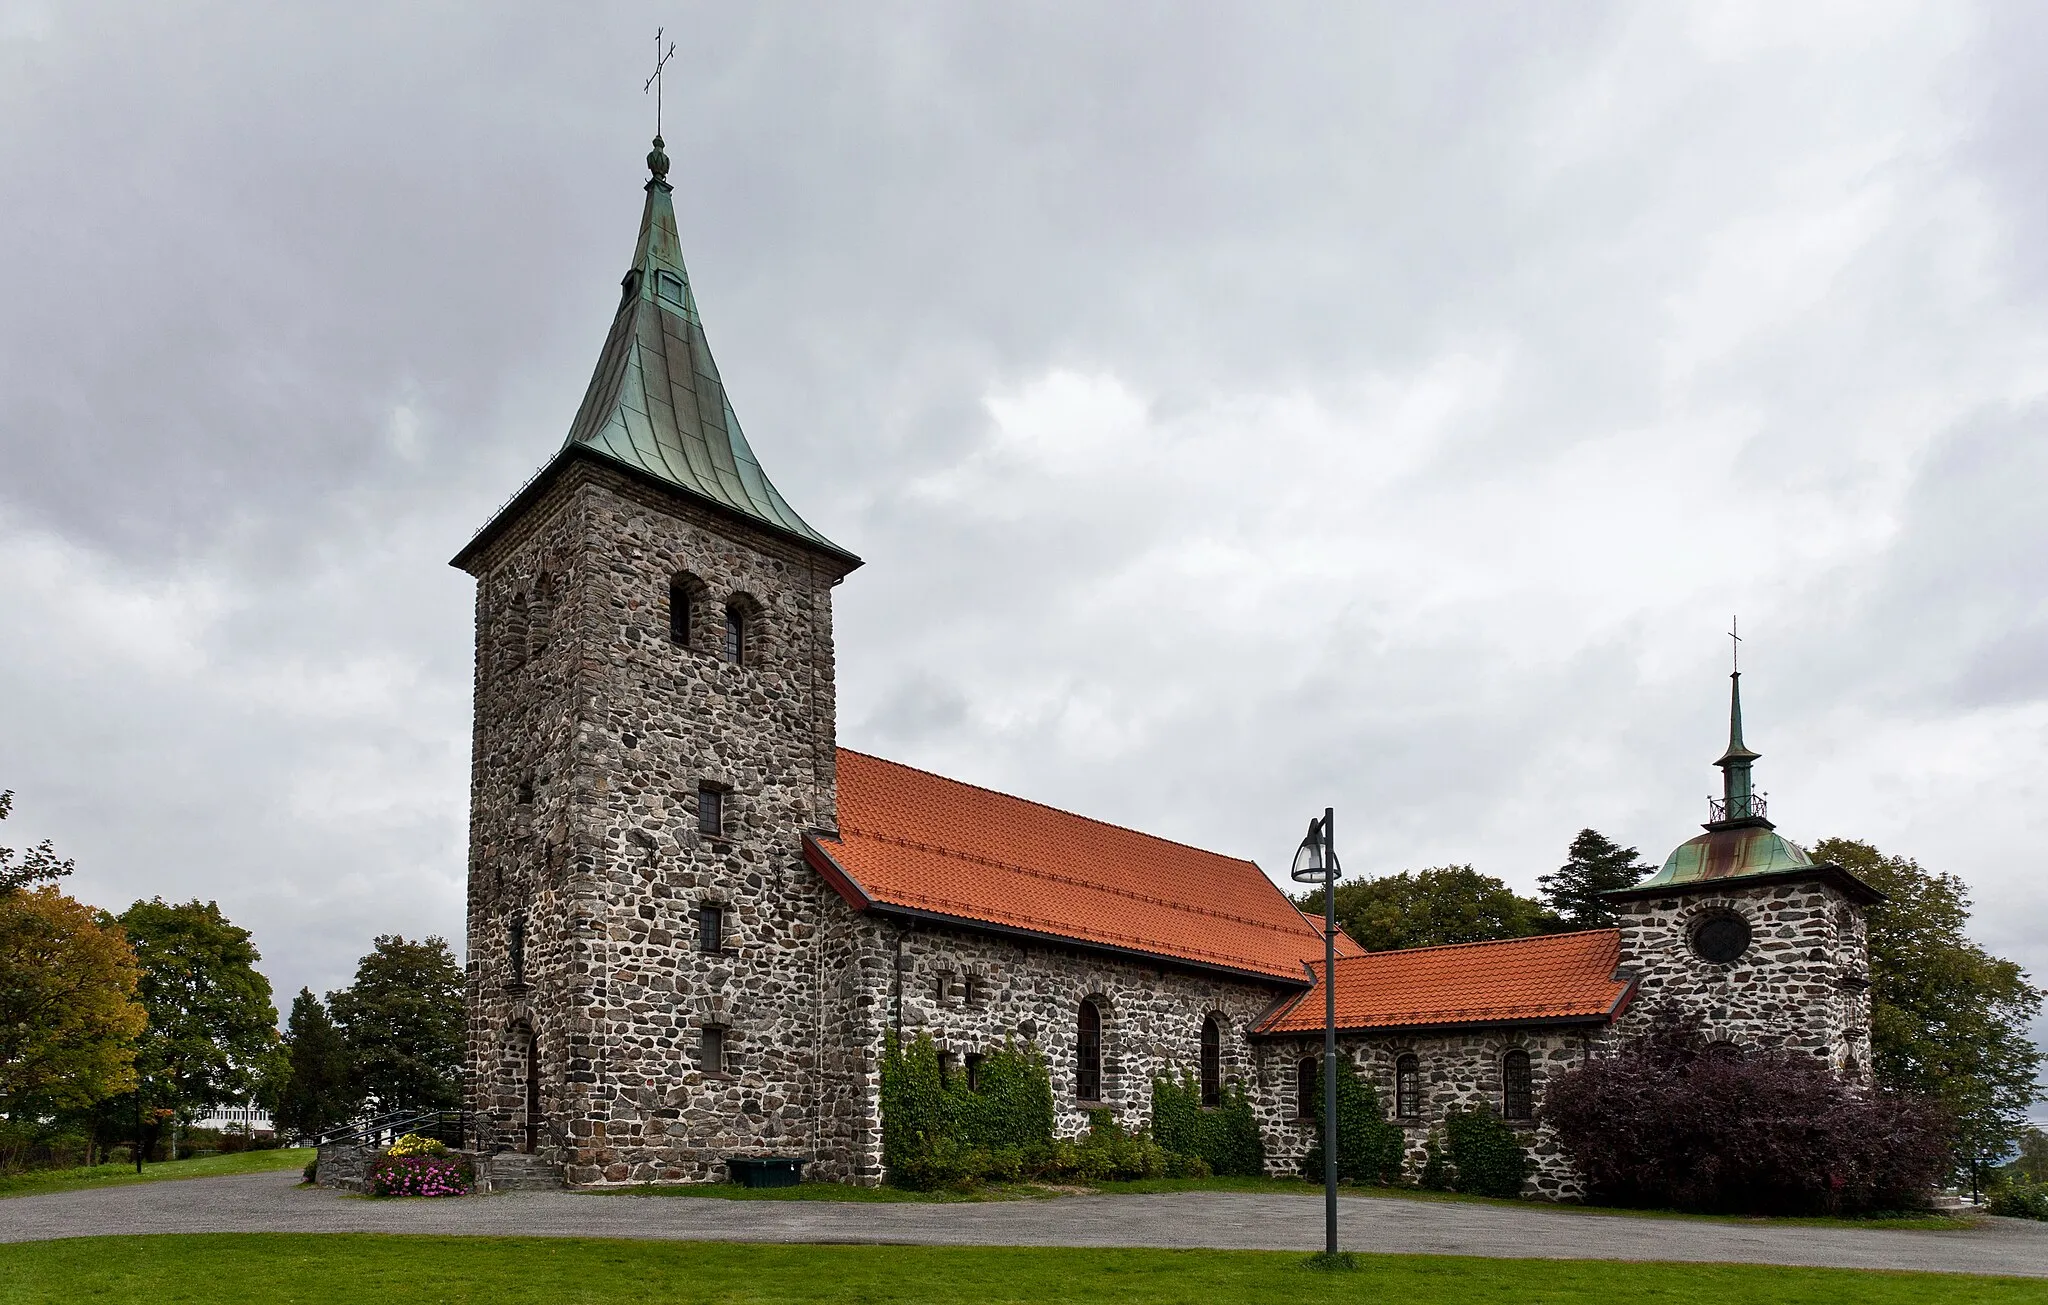 Image of Oslo og Viken